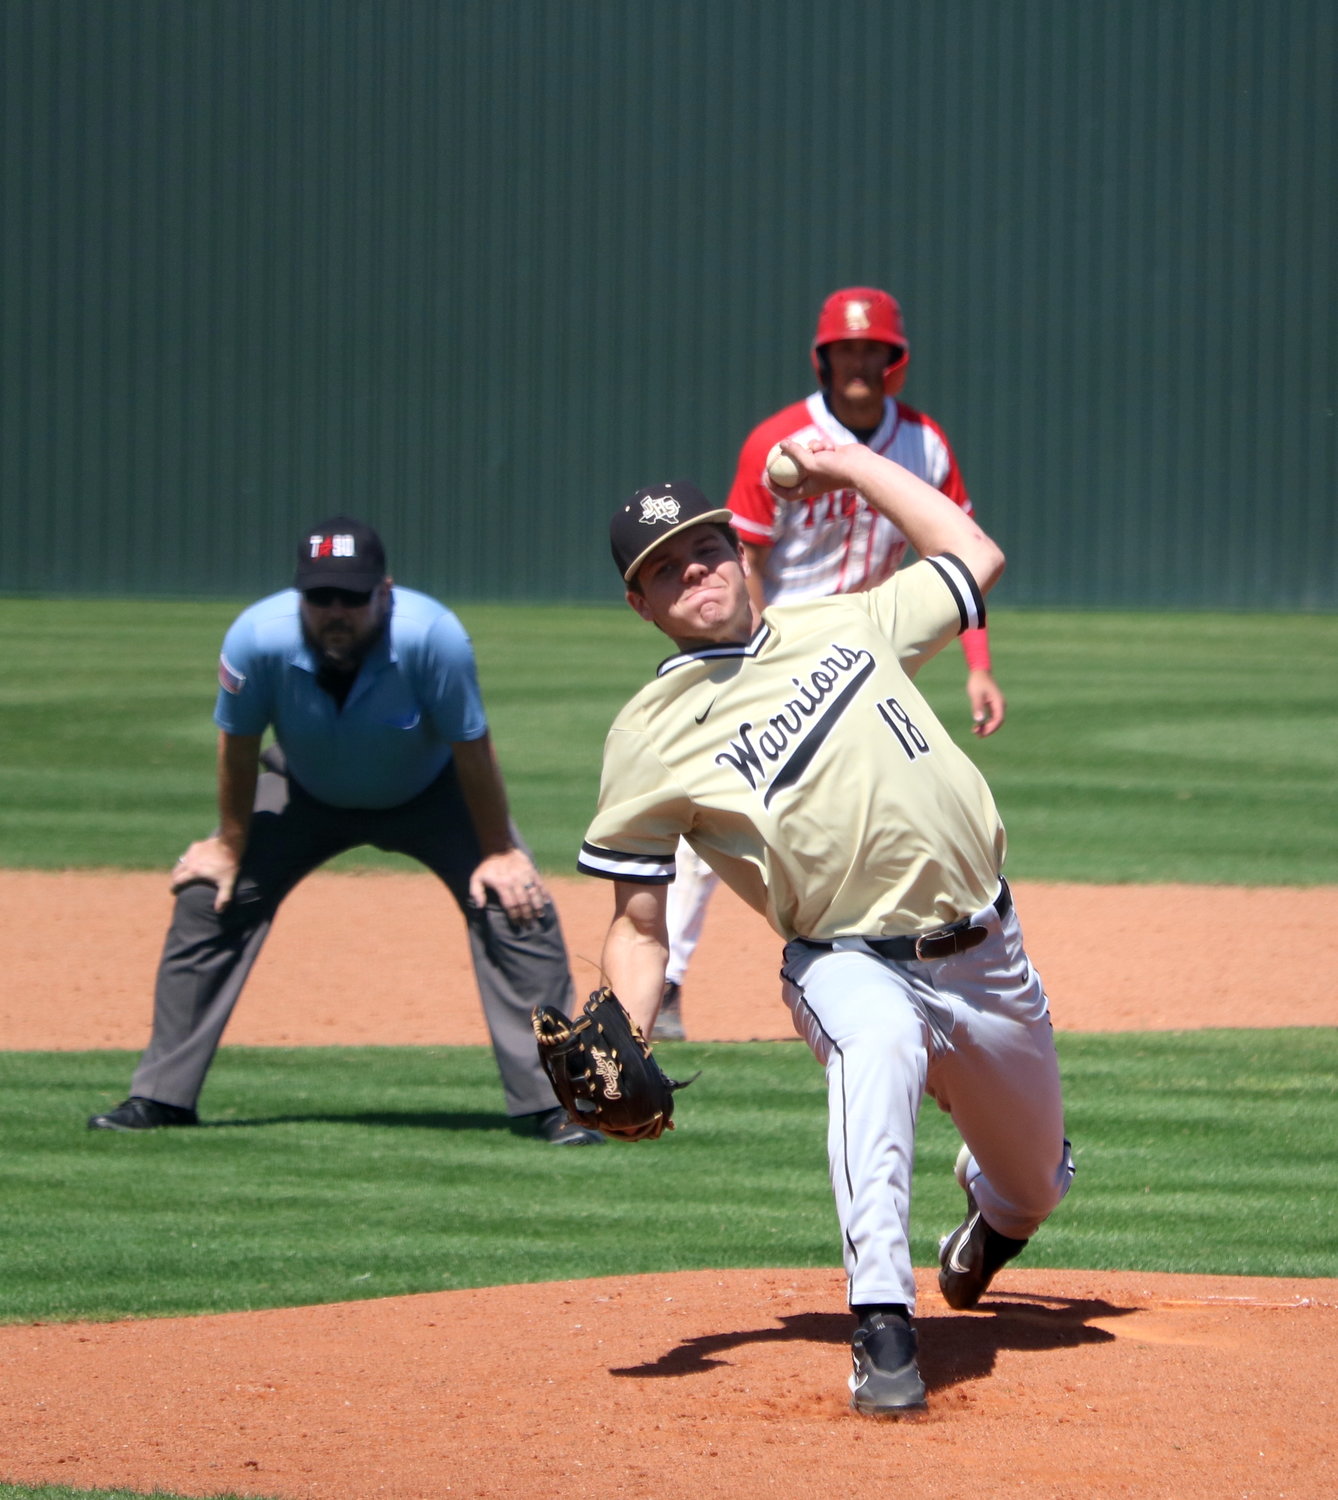 Davis Duhon pitches during Saturday's game between Katy and Jordan at the Katy baseball field.